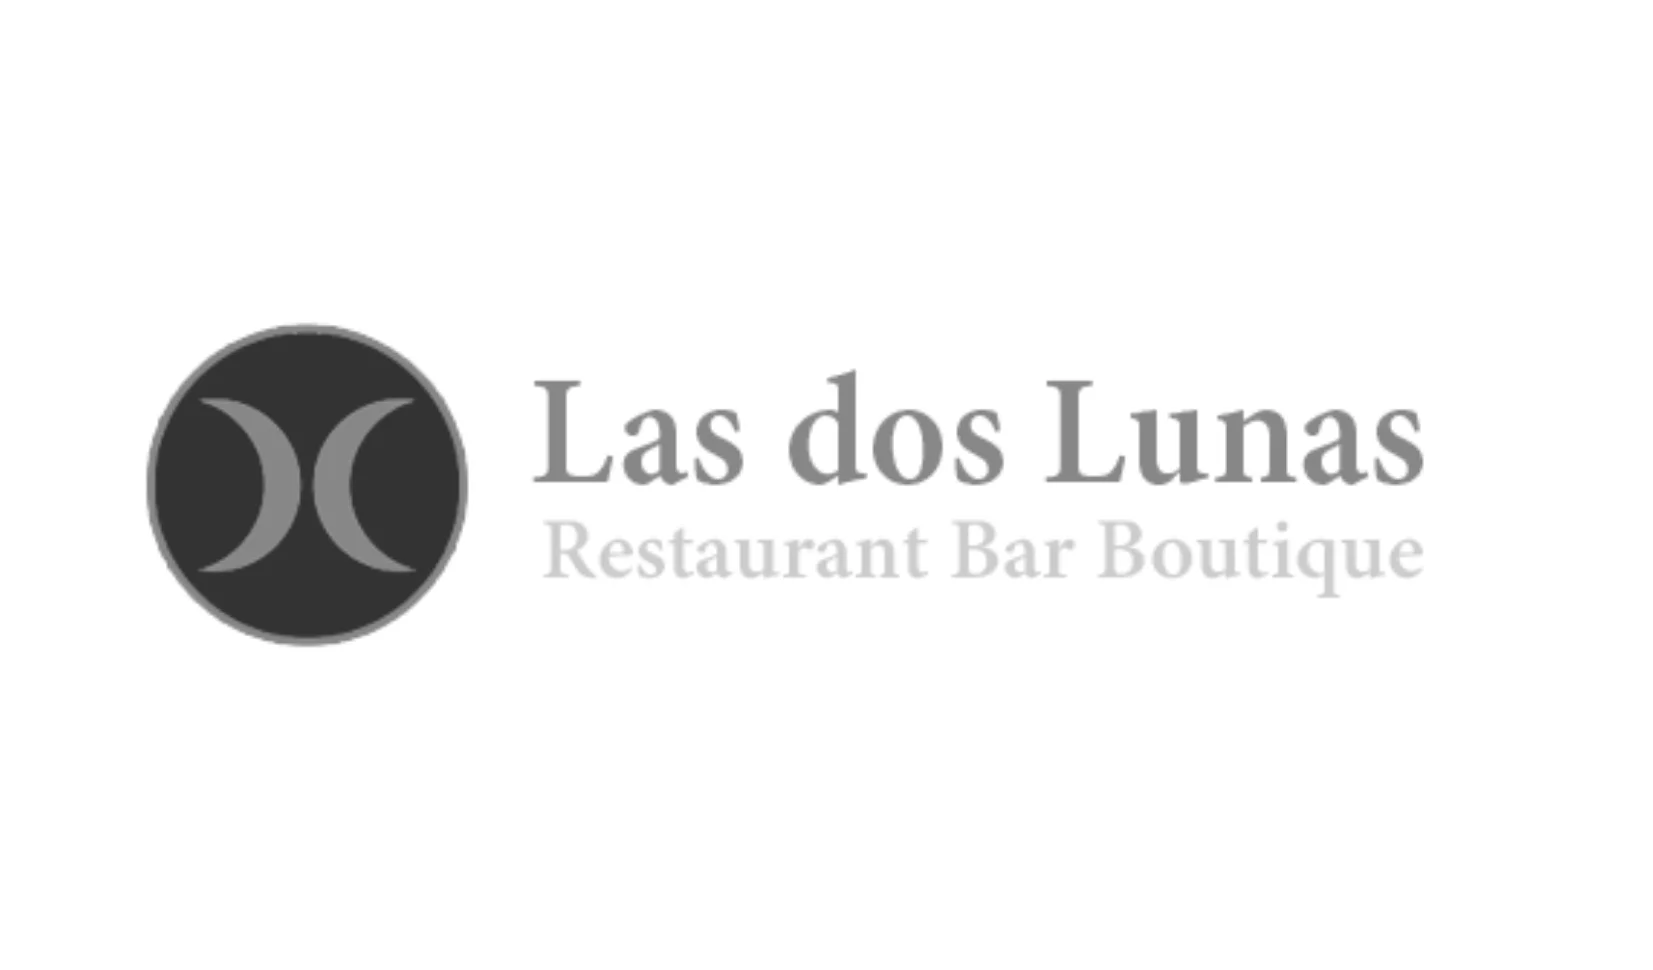 Las Dos Lunas Restaurant